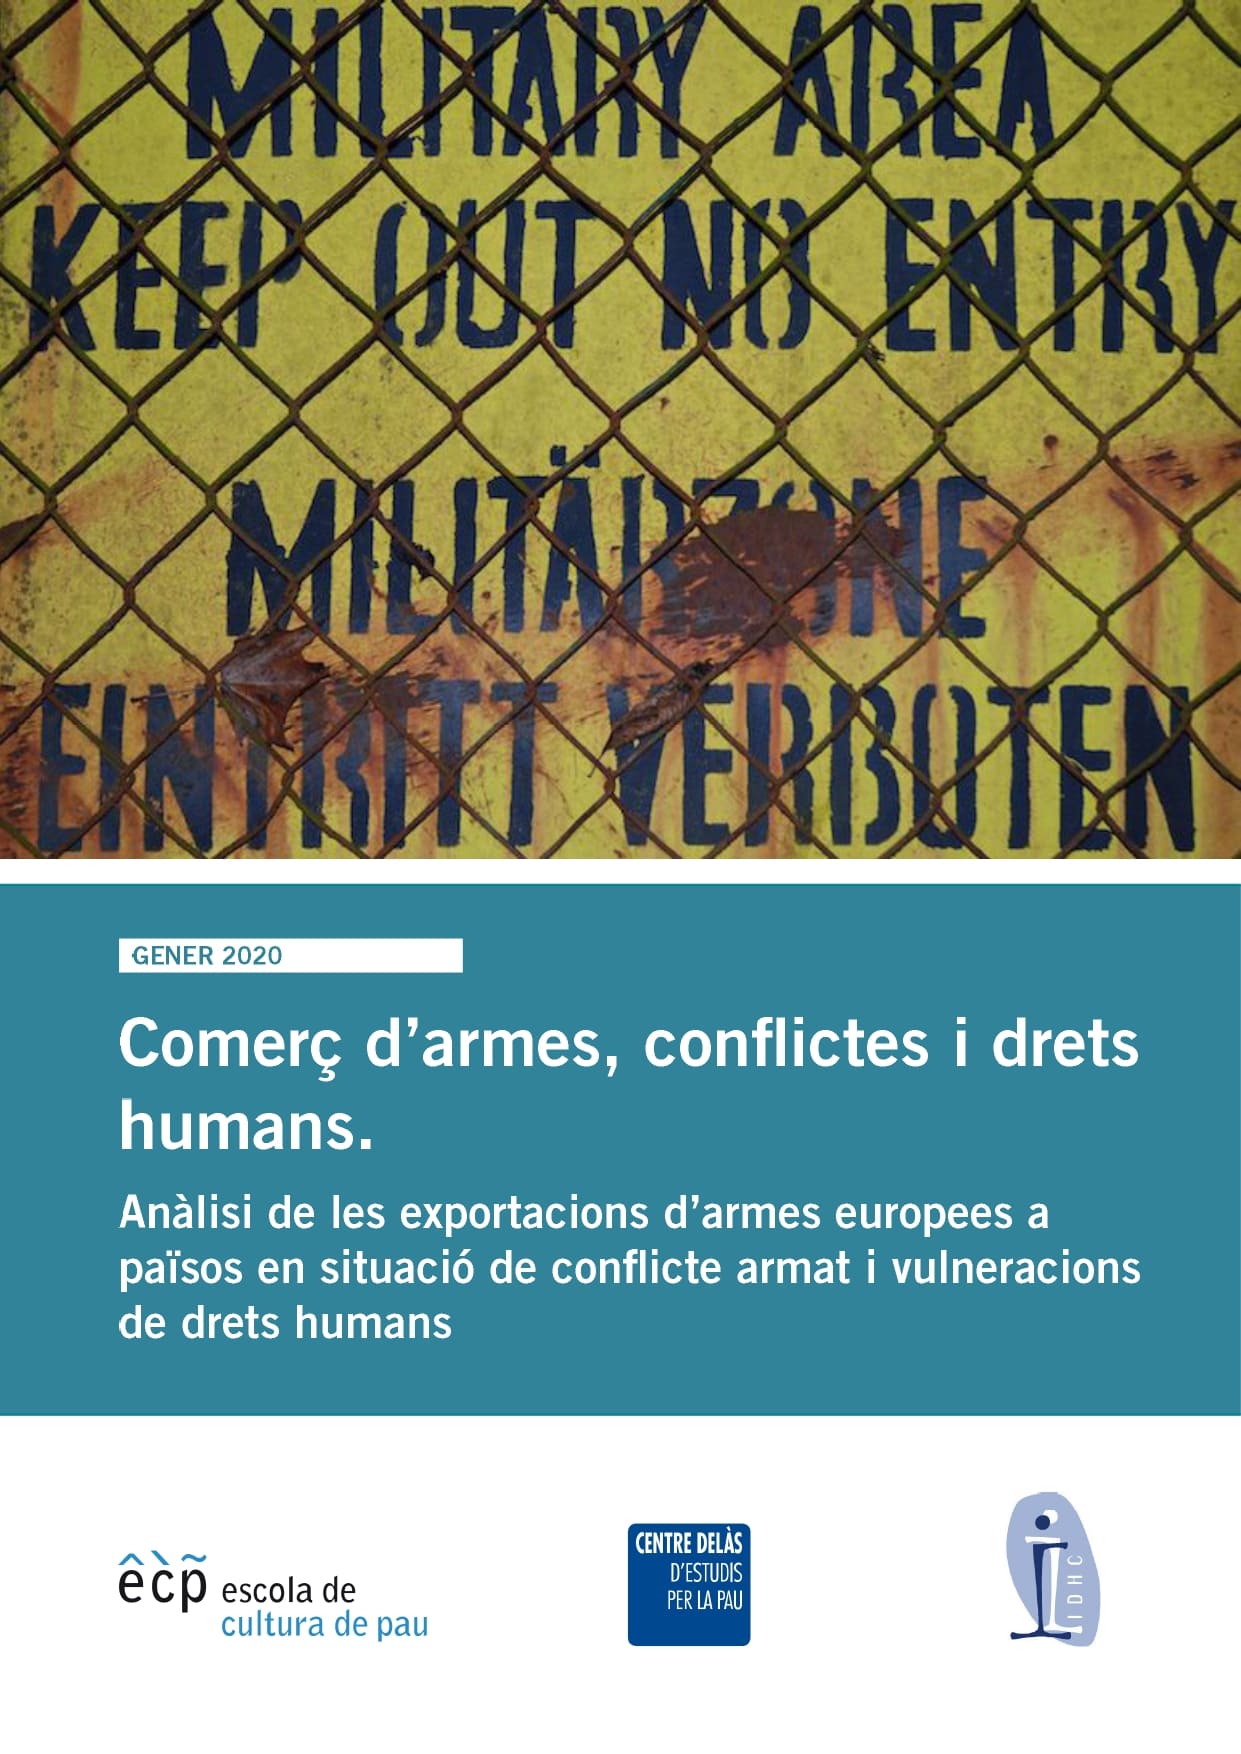 Informe del Centre Delàs, la ECP i l’IDHC: Comerç d’armes, conflictes i drets humans. Anàlisi de les exportacions d’armes europees a països en situació de conflicte armat i vulneracions de drets humans